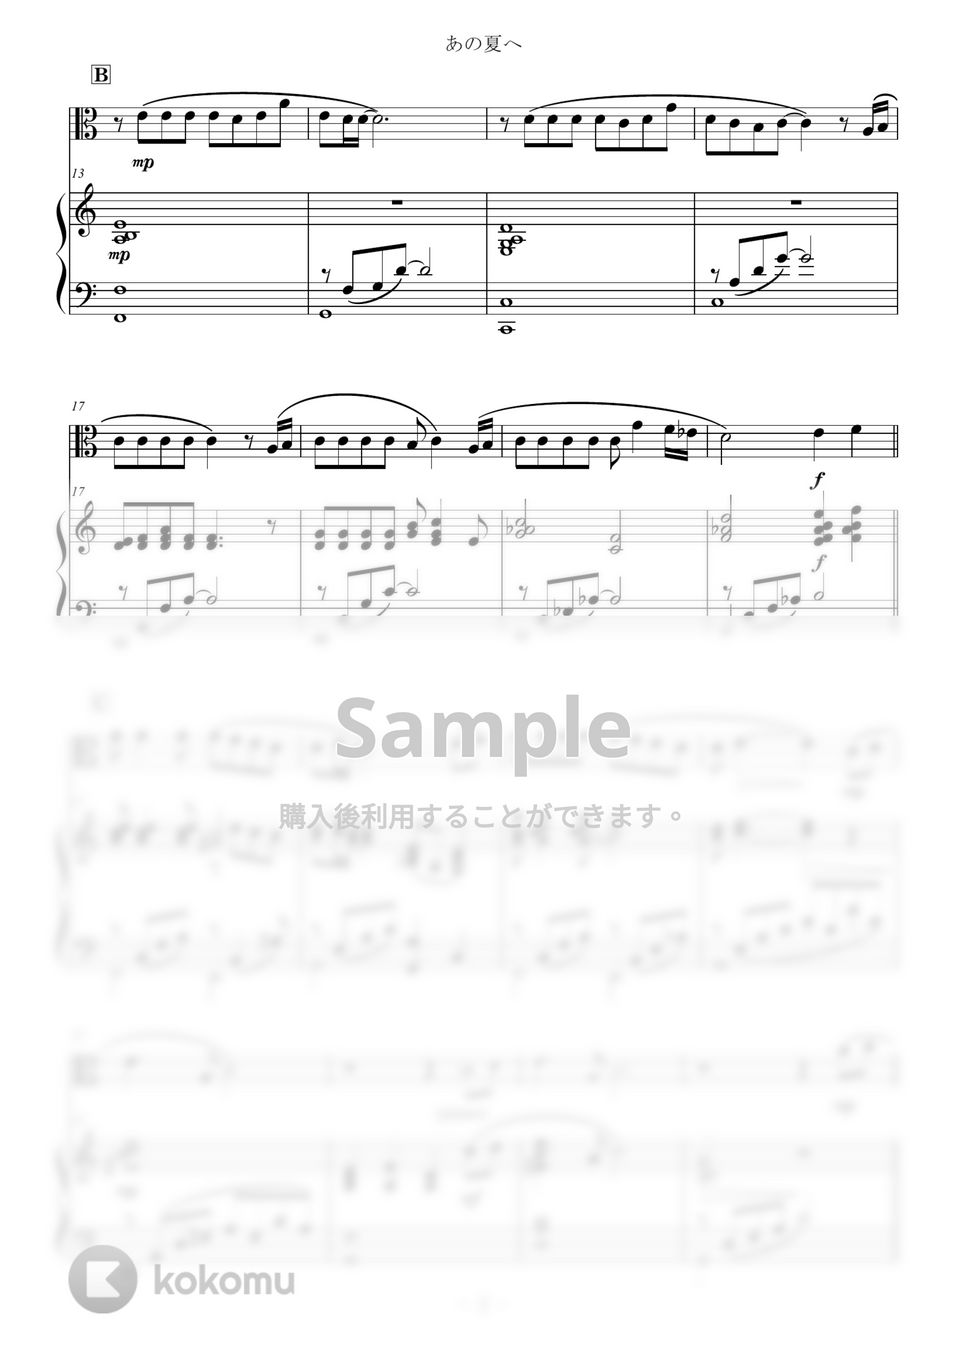 久石譲 - あの夏へ for Viola and Piano / from 千と千尋の神隠し One Summer's Day (千と千尋の神隠し/スタジオジブリ) by Zoe